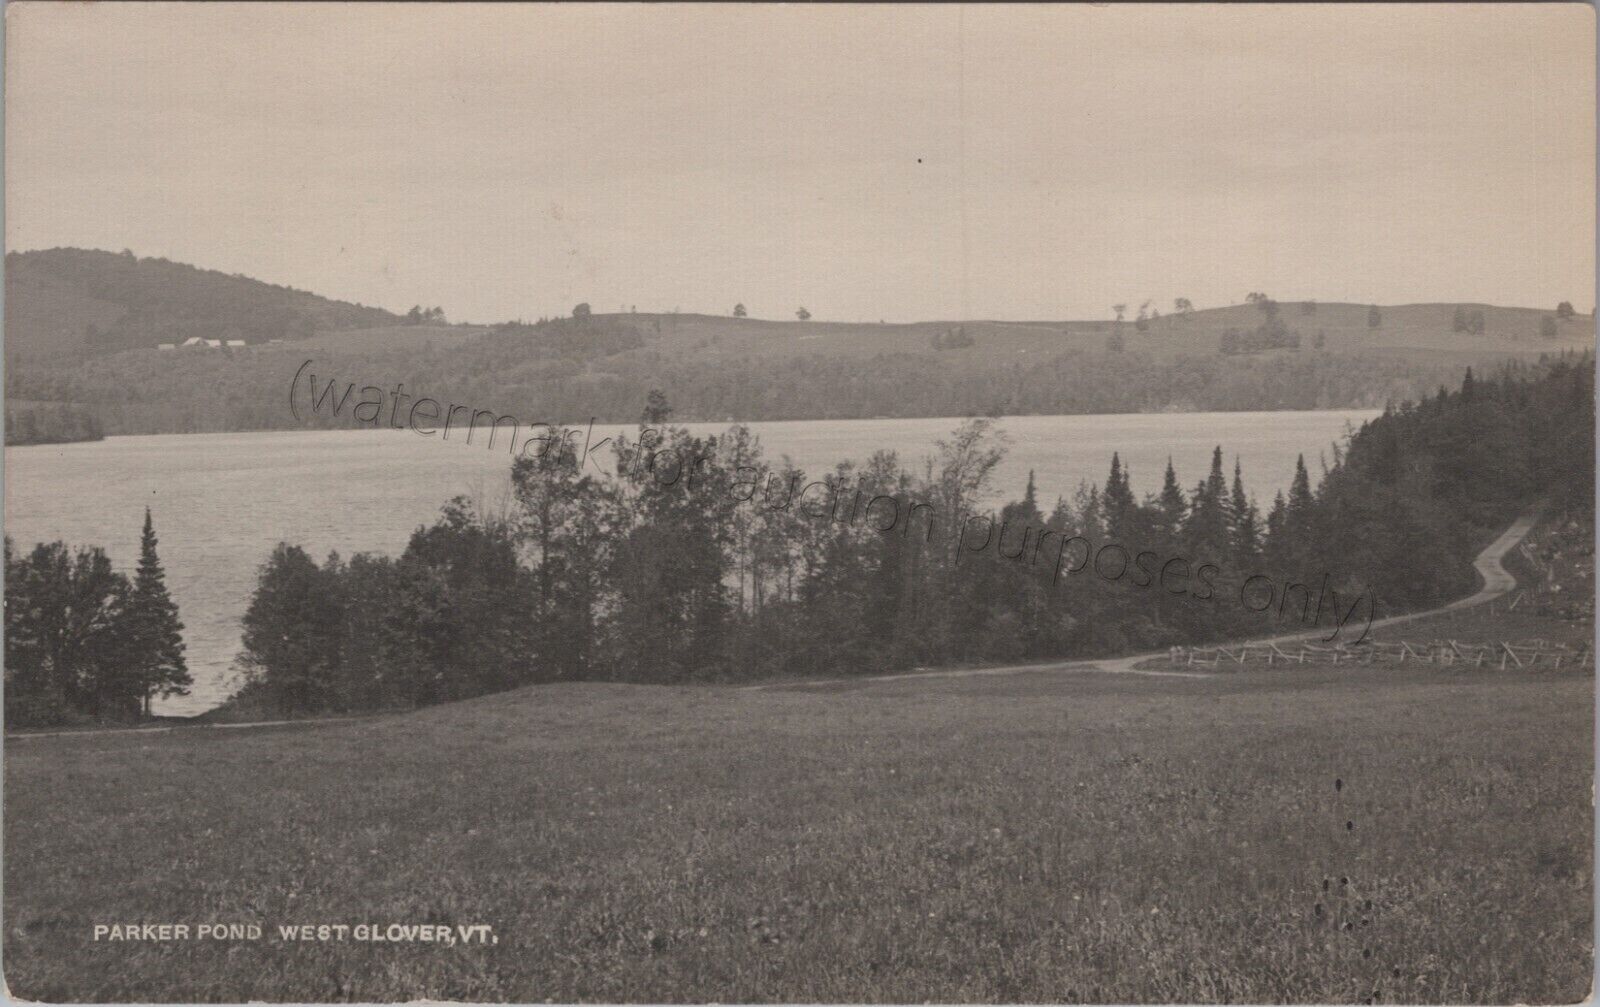 West Glover, VT - Parker Pond postcard  - from Barton Vermont, vintage landscape